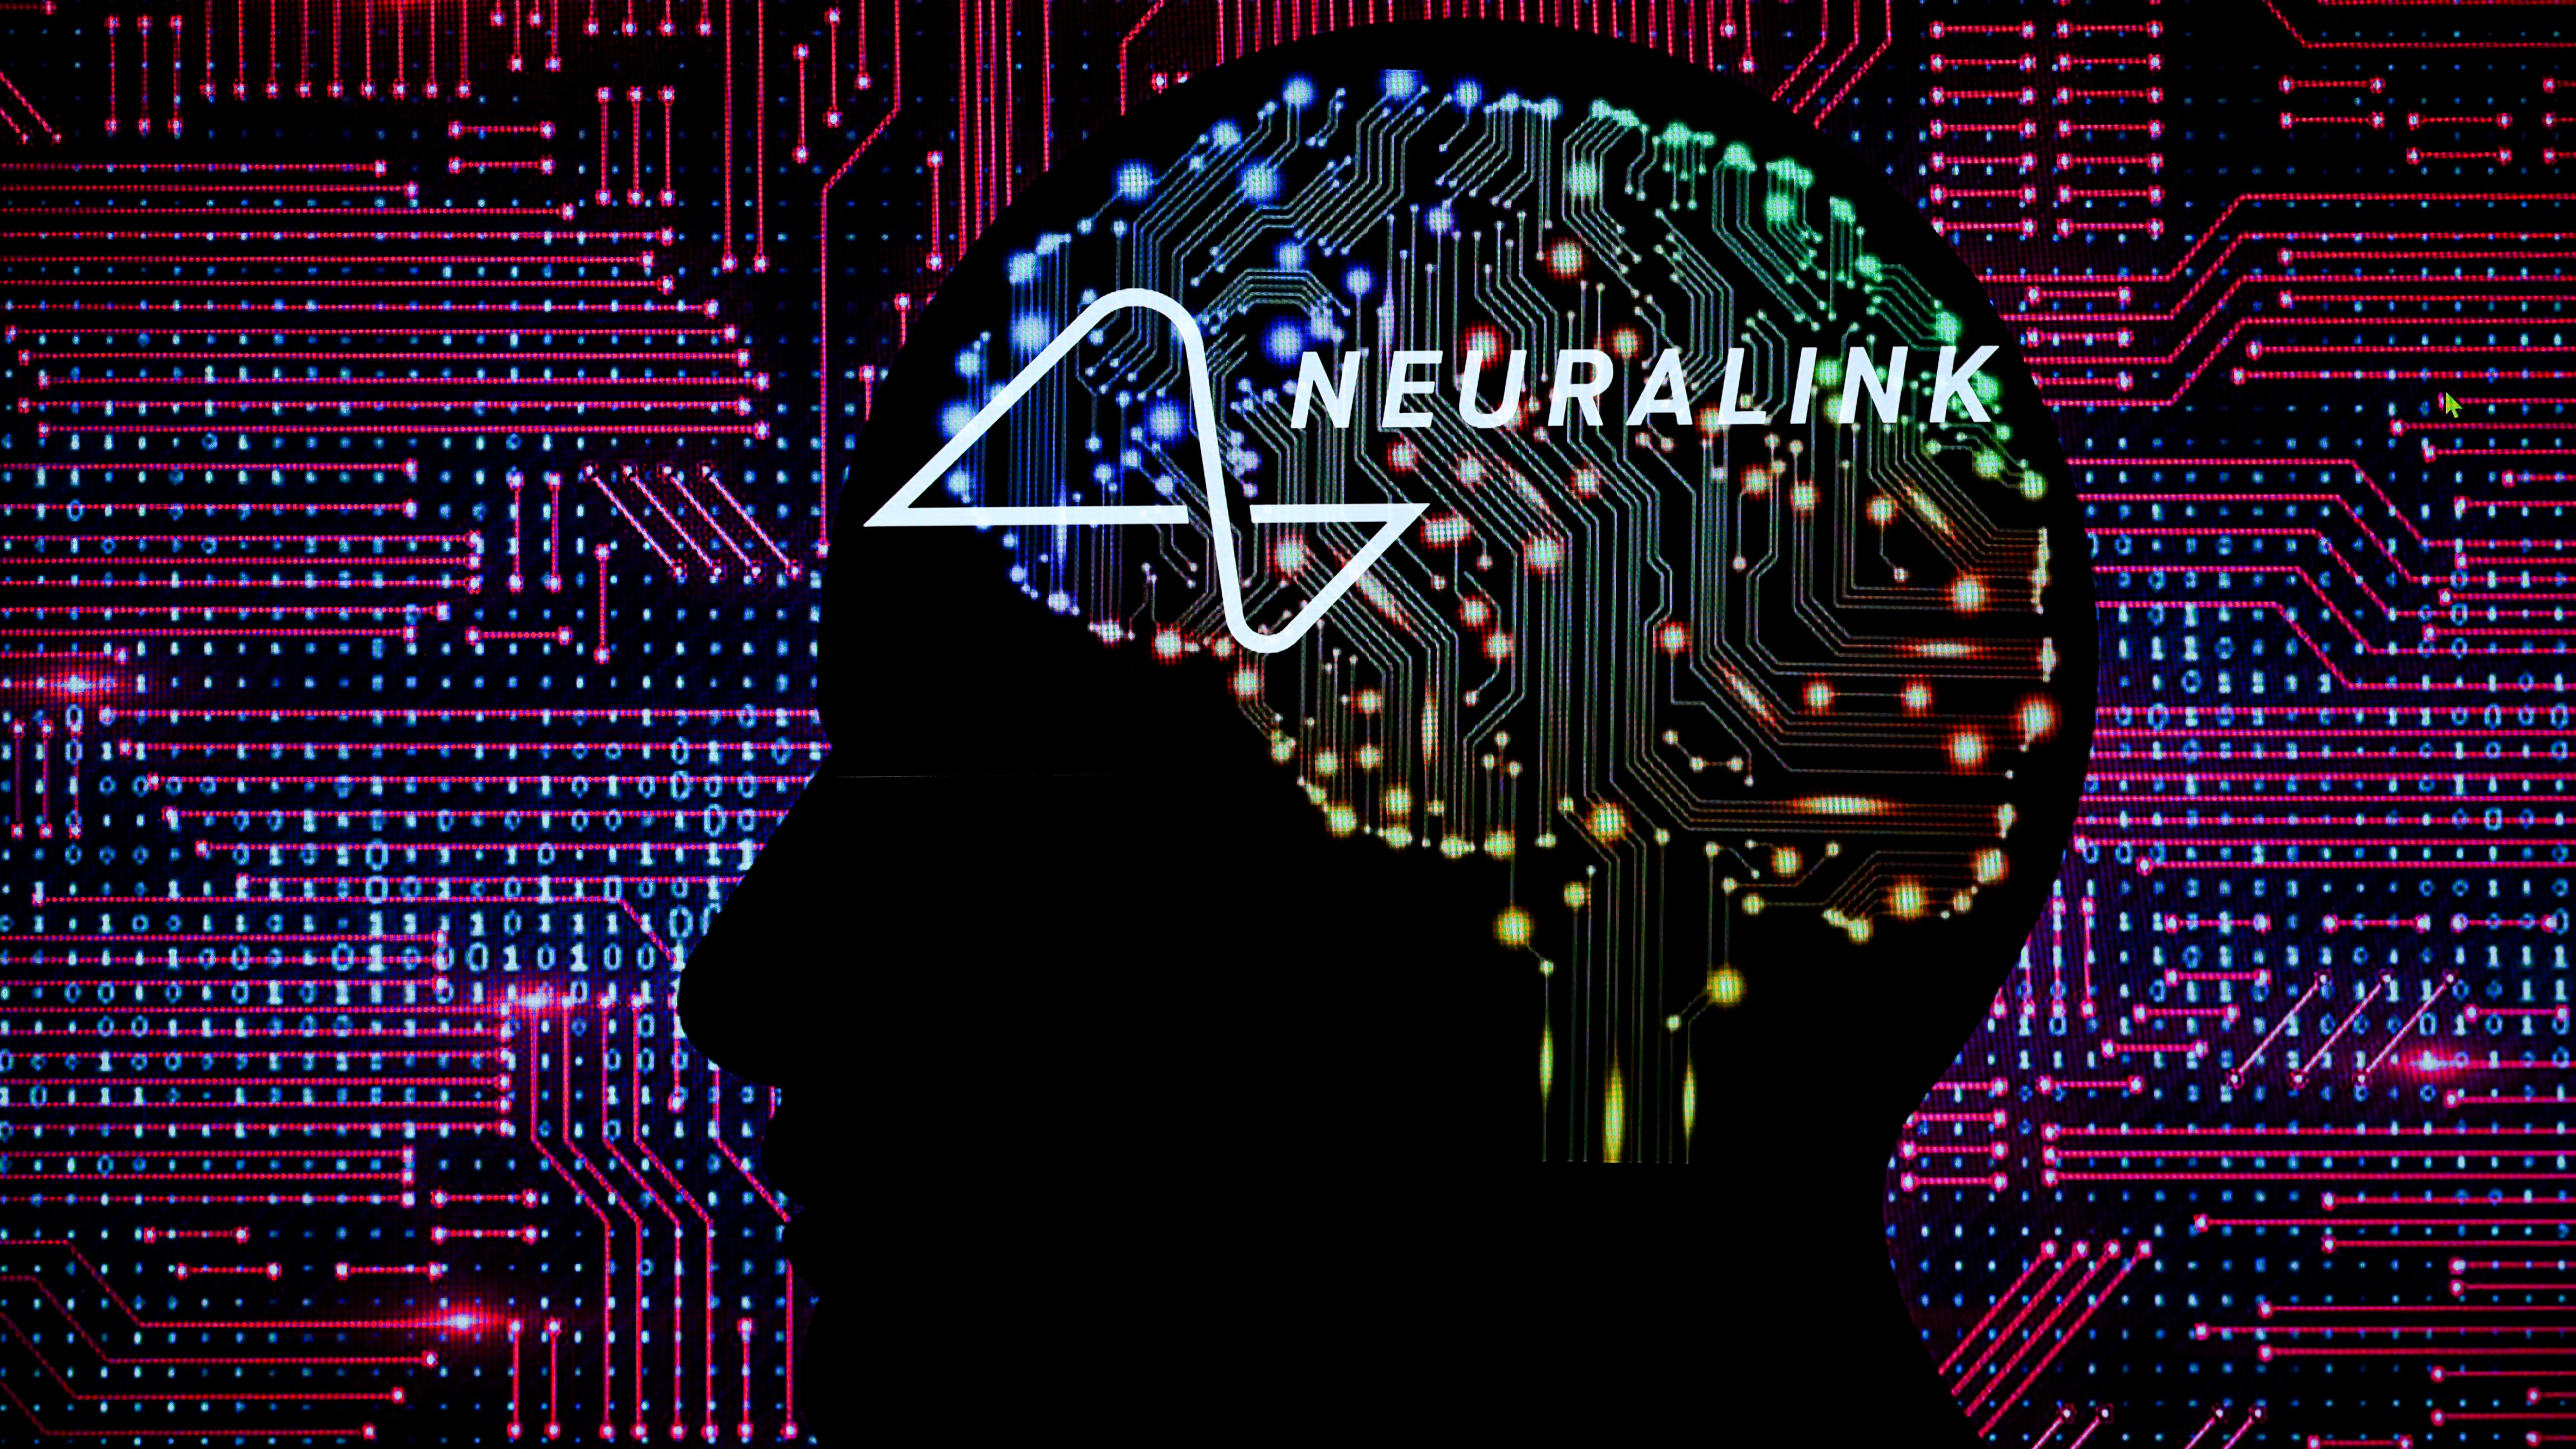 Neuralink търси втори пациент за мозъчен имплант - има ли доброволци?